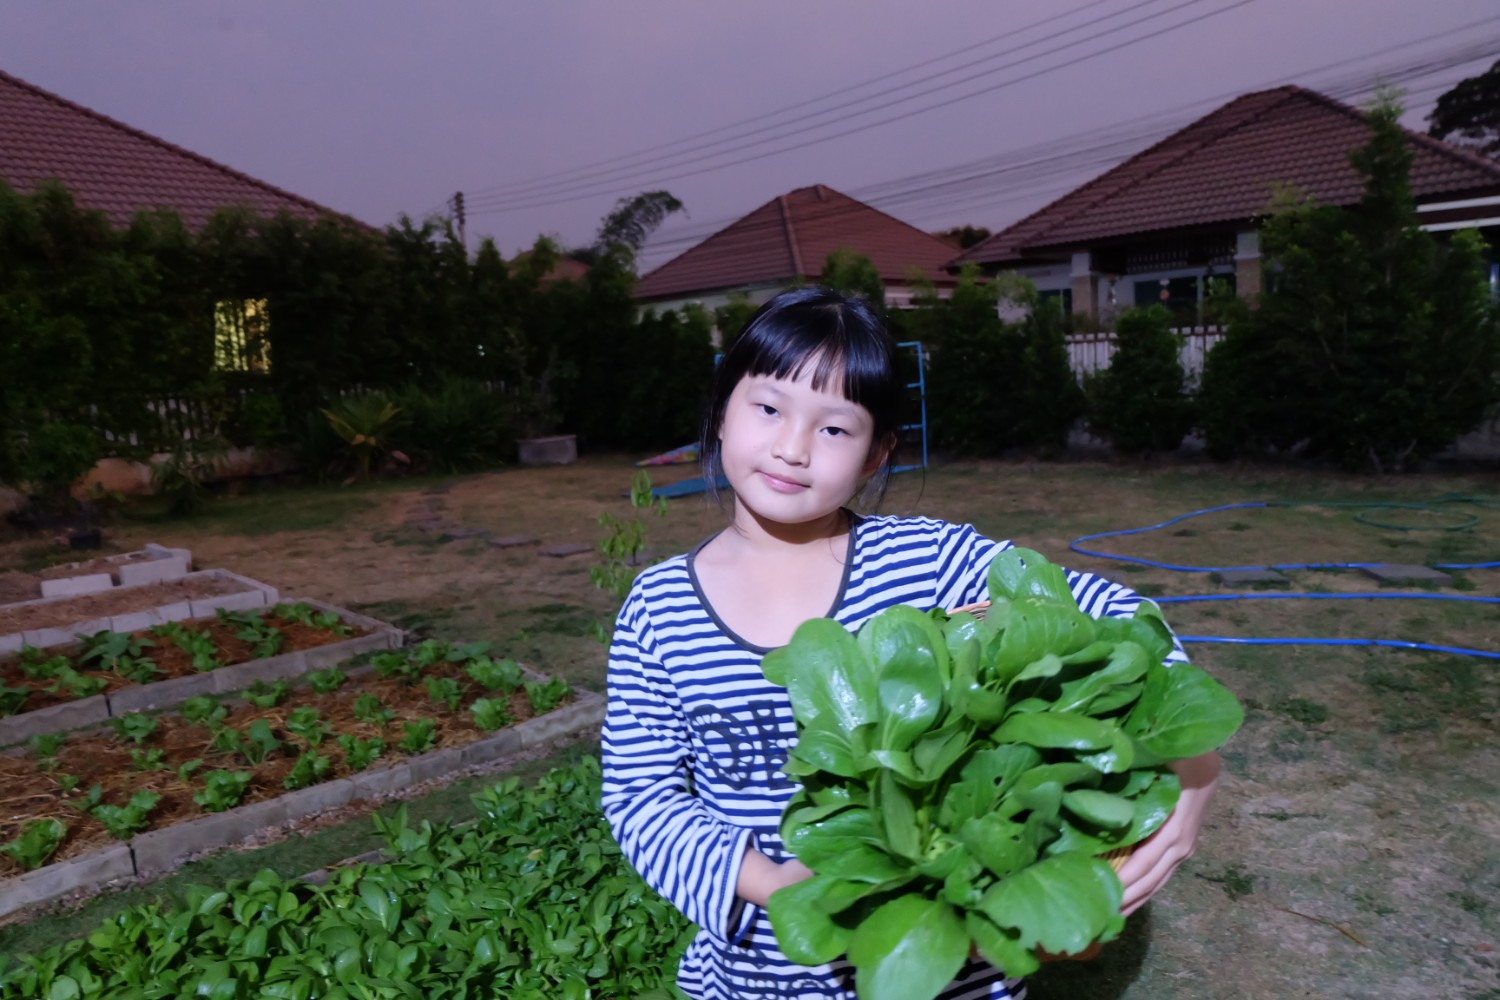 แชร์ประสบการณ์ “ปลูกผักกวางตุ้งฮ่องเต้” วิถีประหยัด ปลอดสารพิษ กินกันได้ทั้งบ้าน